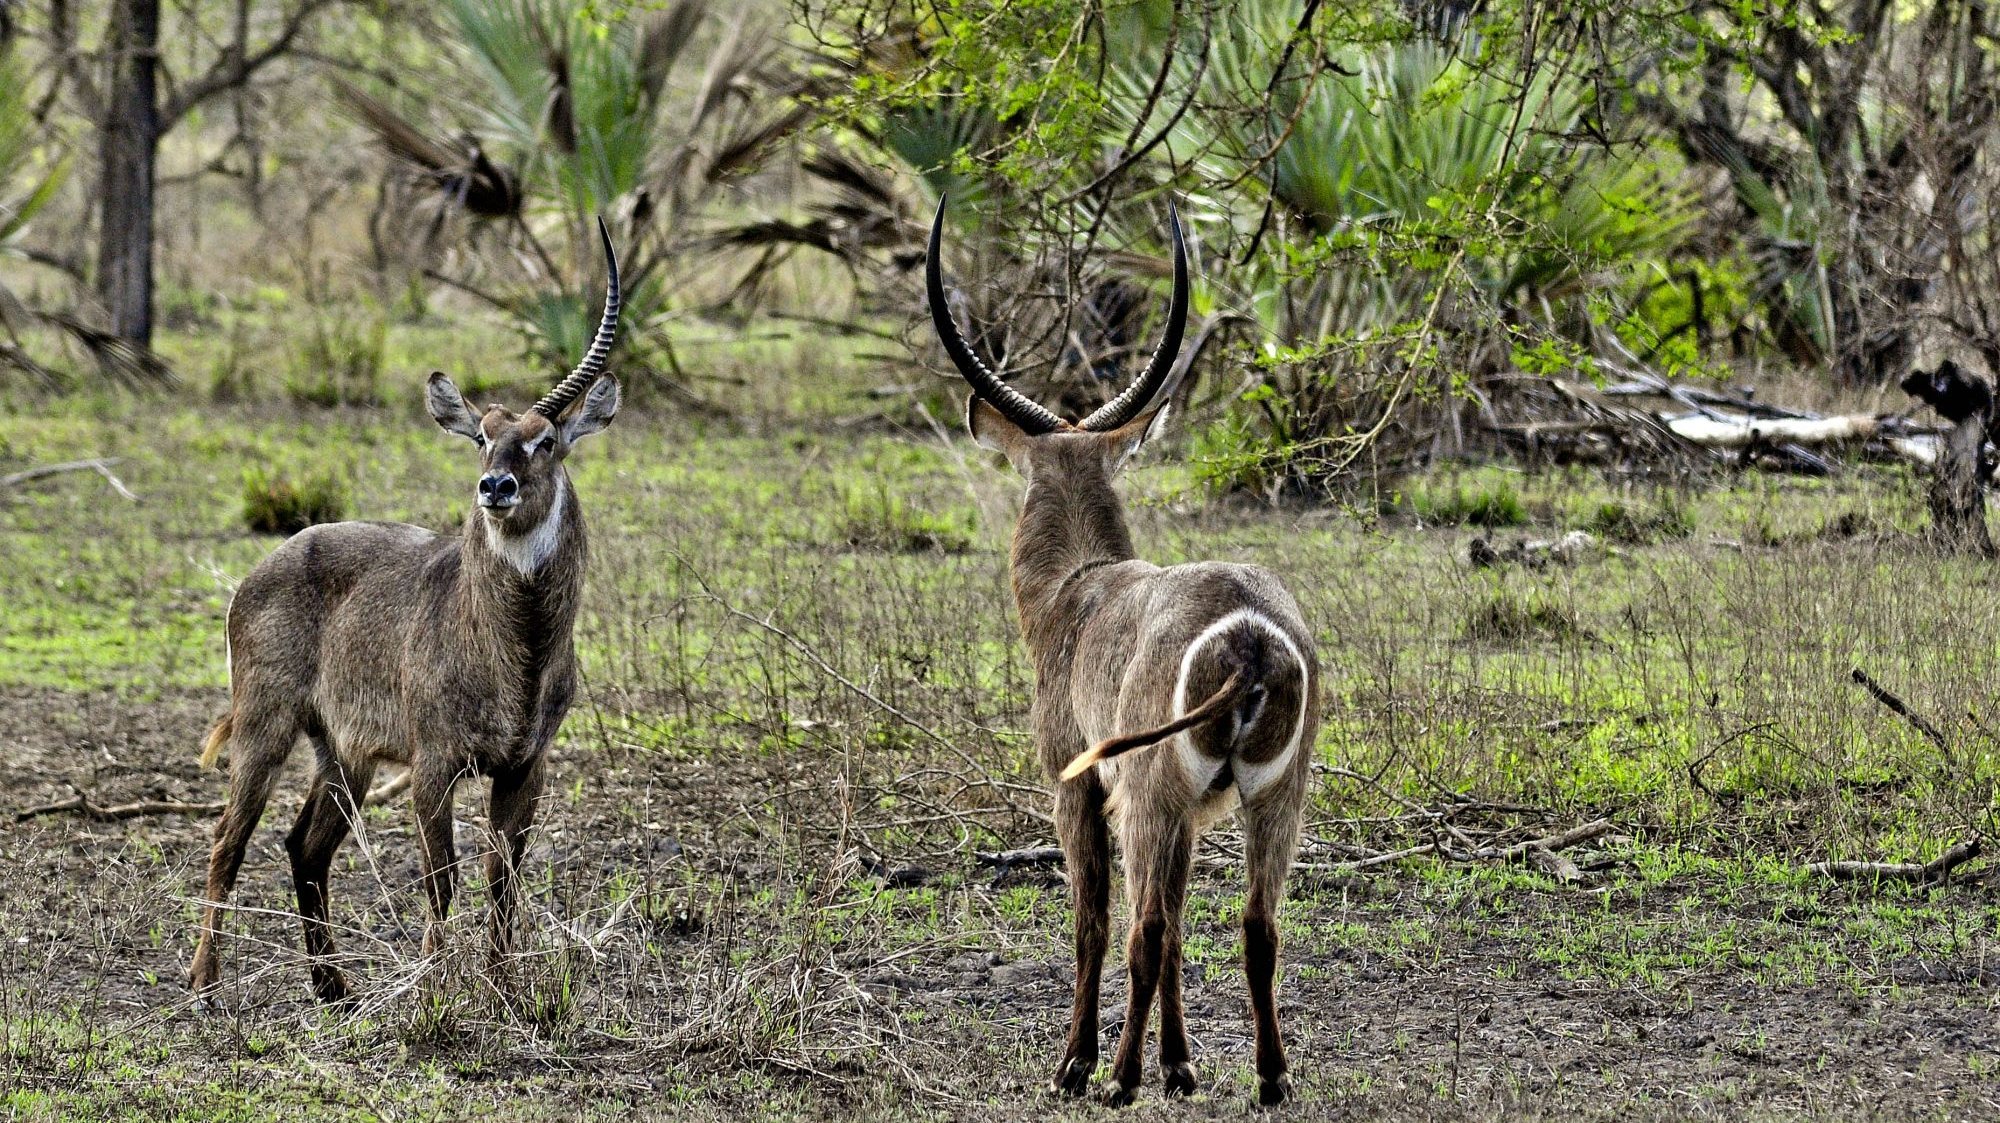 Criada em 1960, a Reserva Especial do Niassa, no norte de Moçambique, é a maior área protegida do país, com uma extensão de 42.400 quilómetros quadrados